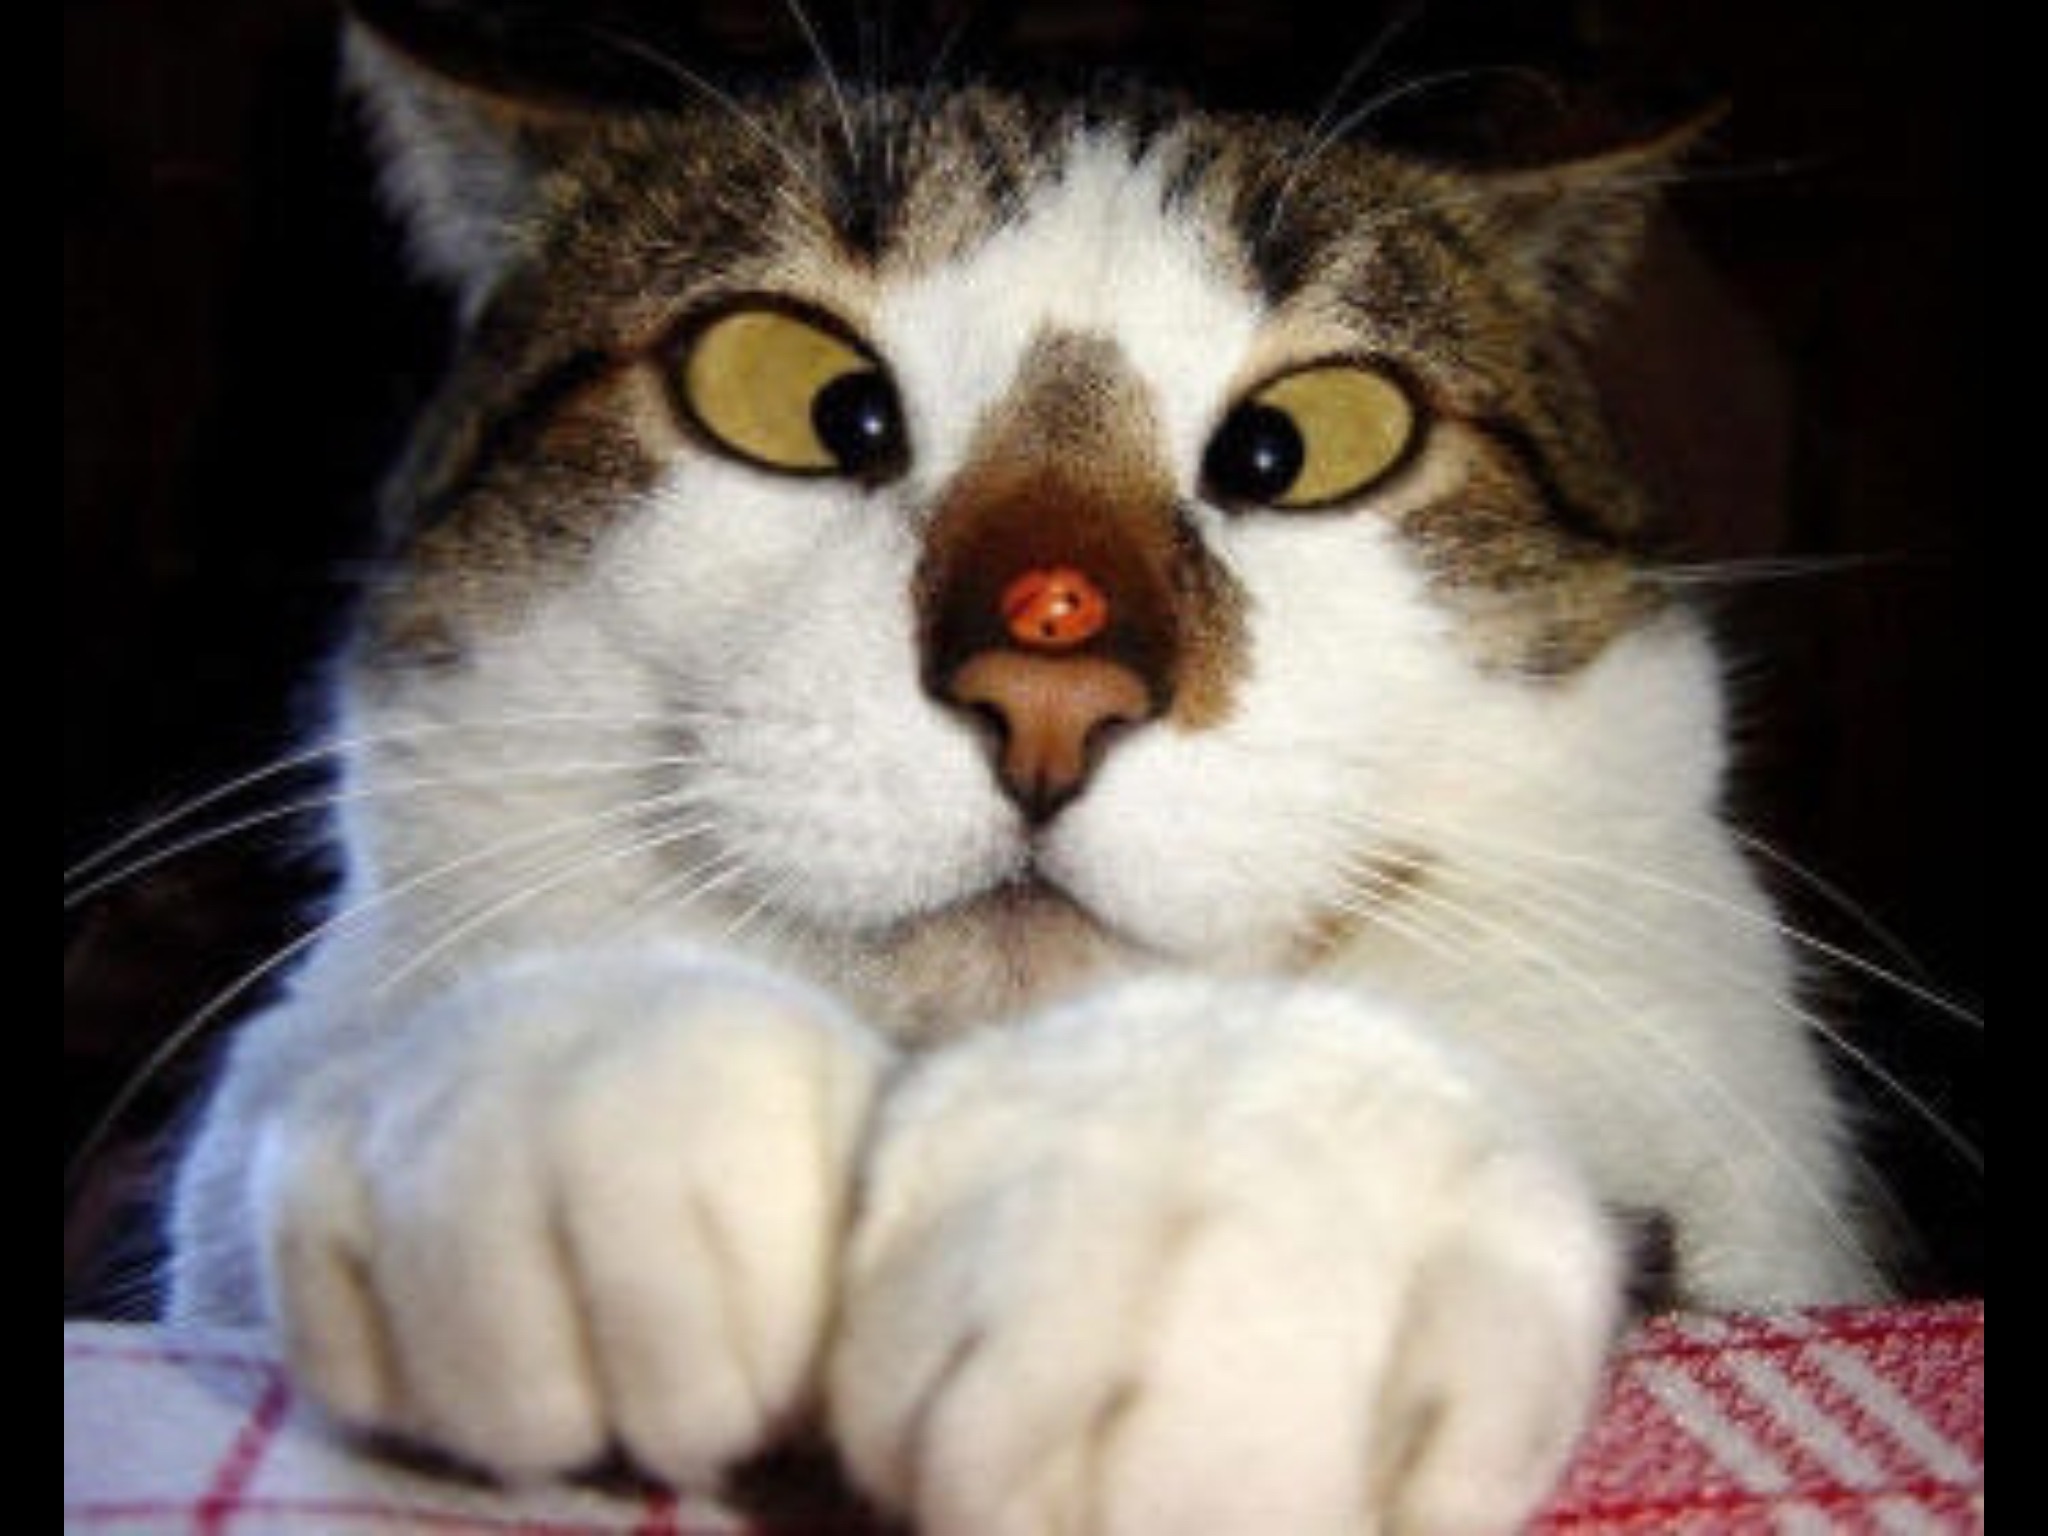 Обожал глазами. Прикольные кошки. Смешной кот. Кот глаза в кучу. Приколы с котами.